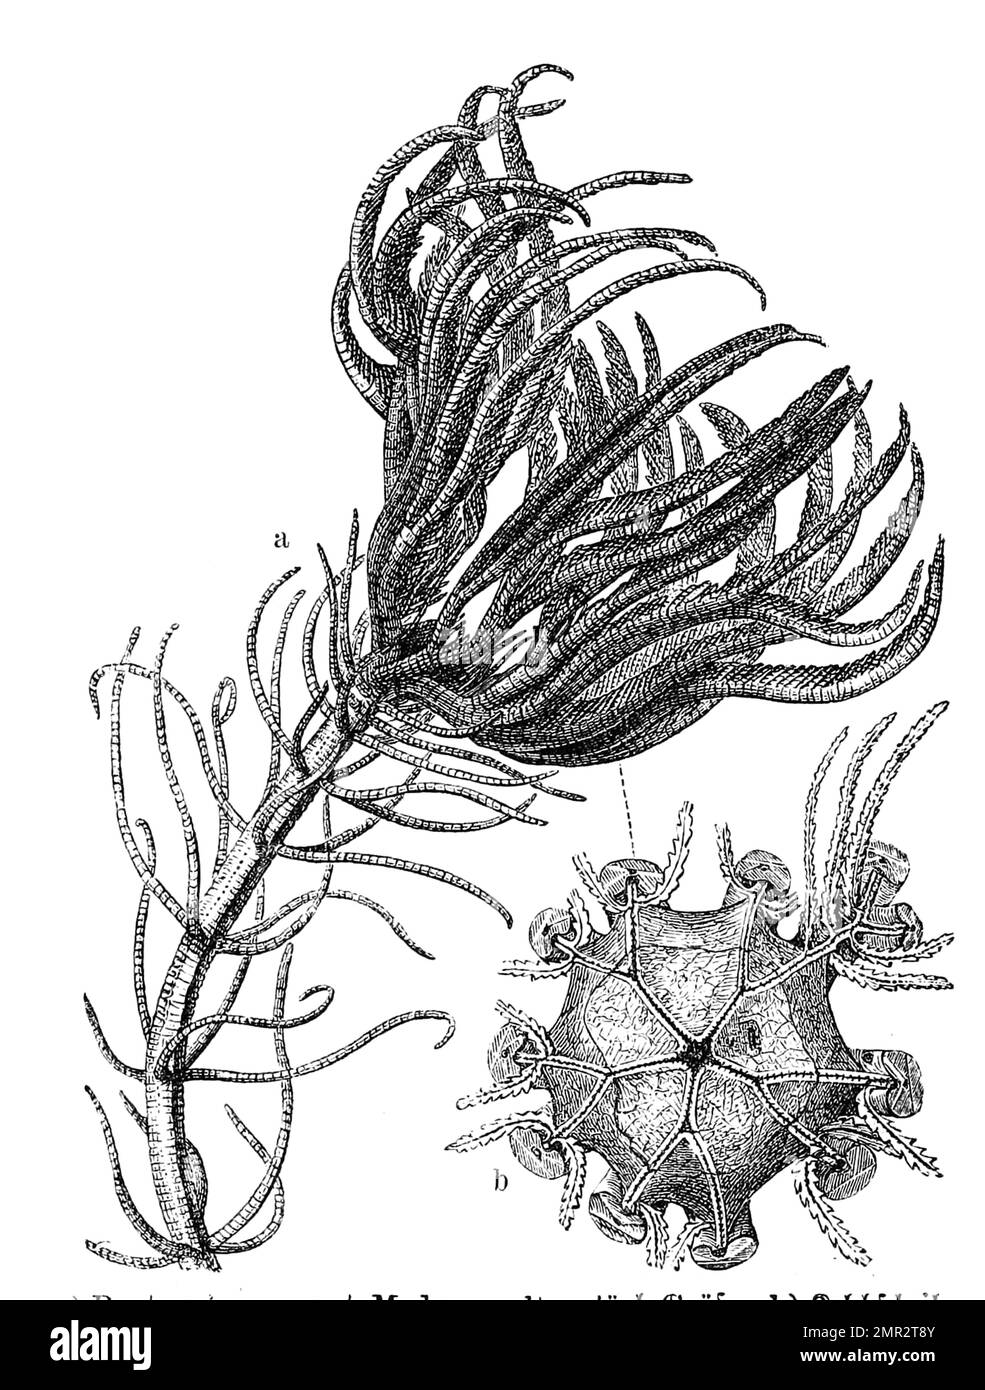 Pentacrinus caput Medusae,zur Familie der Seesterne gehörend, Historisch, digital restaurierte Reproduktion von einer Vorlage aus dem 19. Jahrhundert Stock Photo